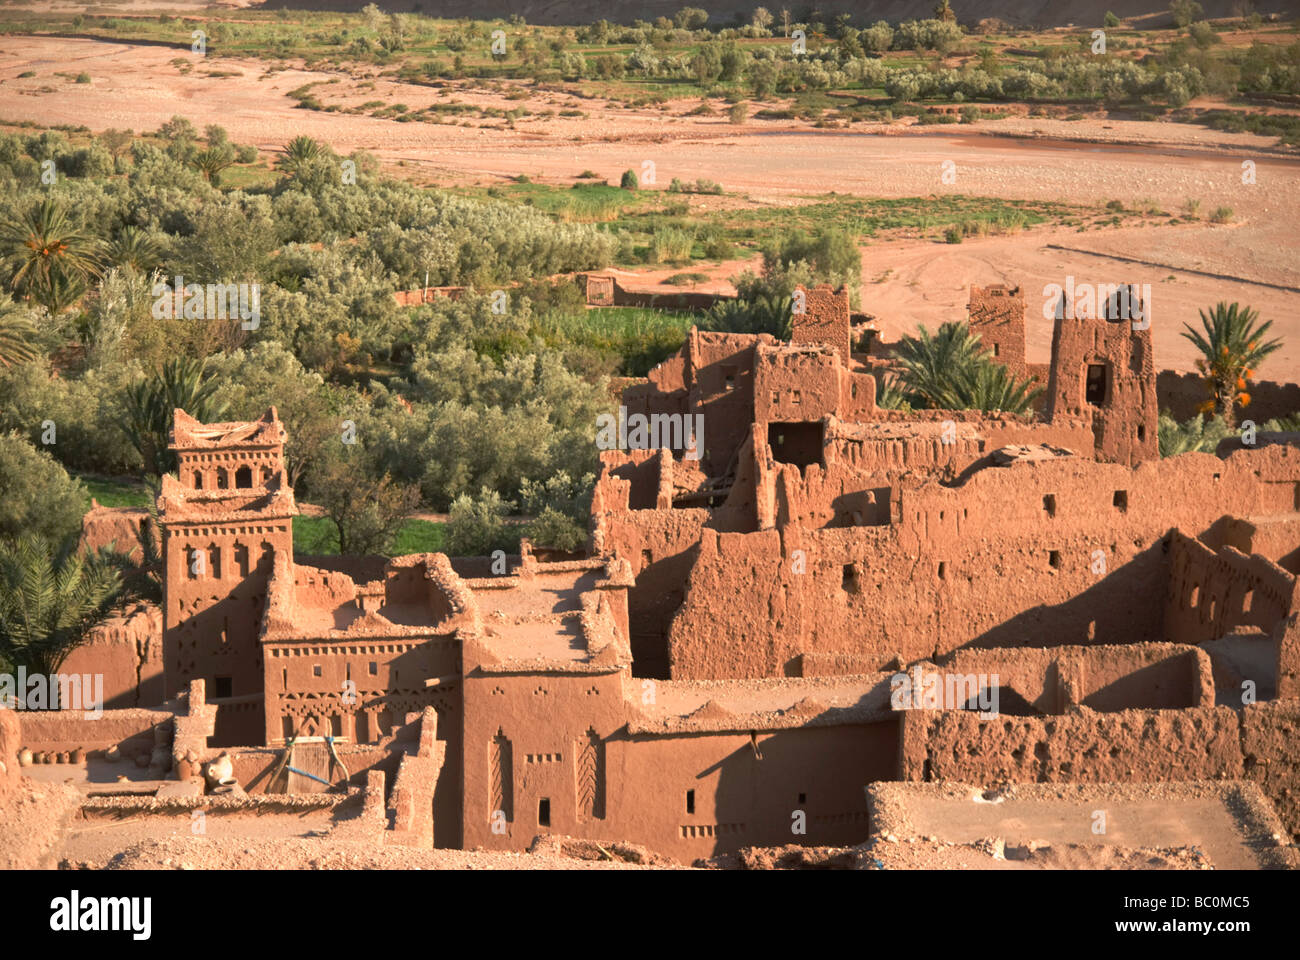 Site du patrimoine mondial de l'Imlil marrakech maroc afrique du Nord Banque D'Images